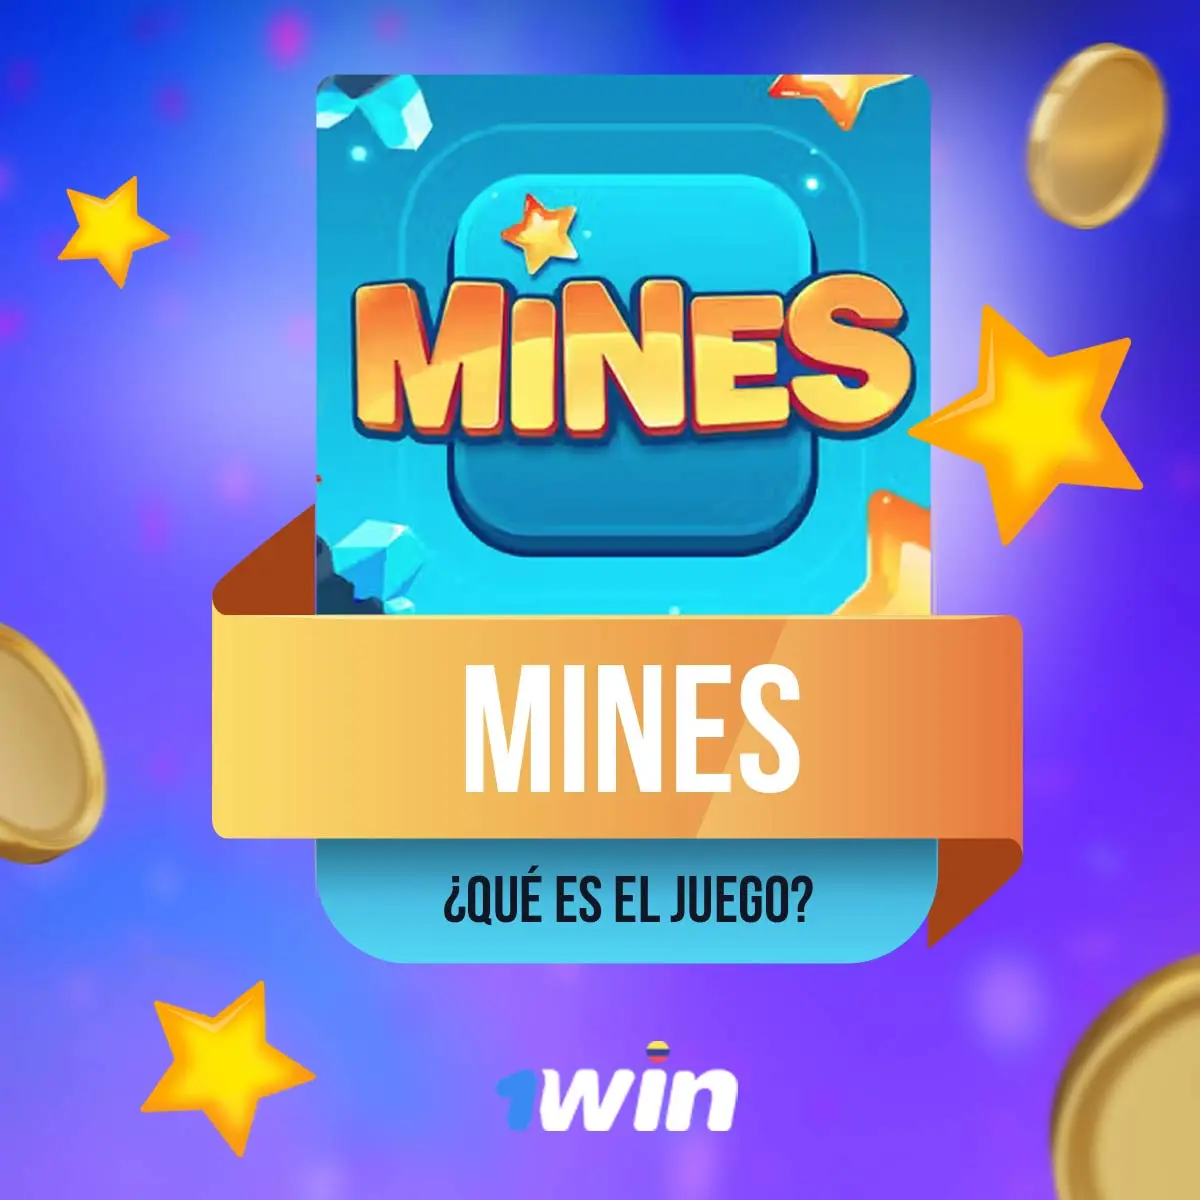 Mines es un popular juego de casino 1Win con buenas ganancias